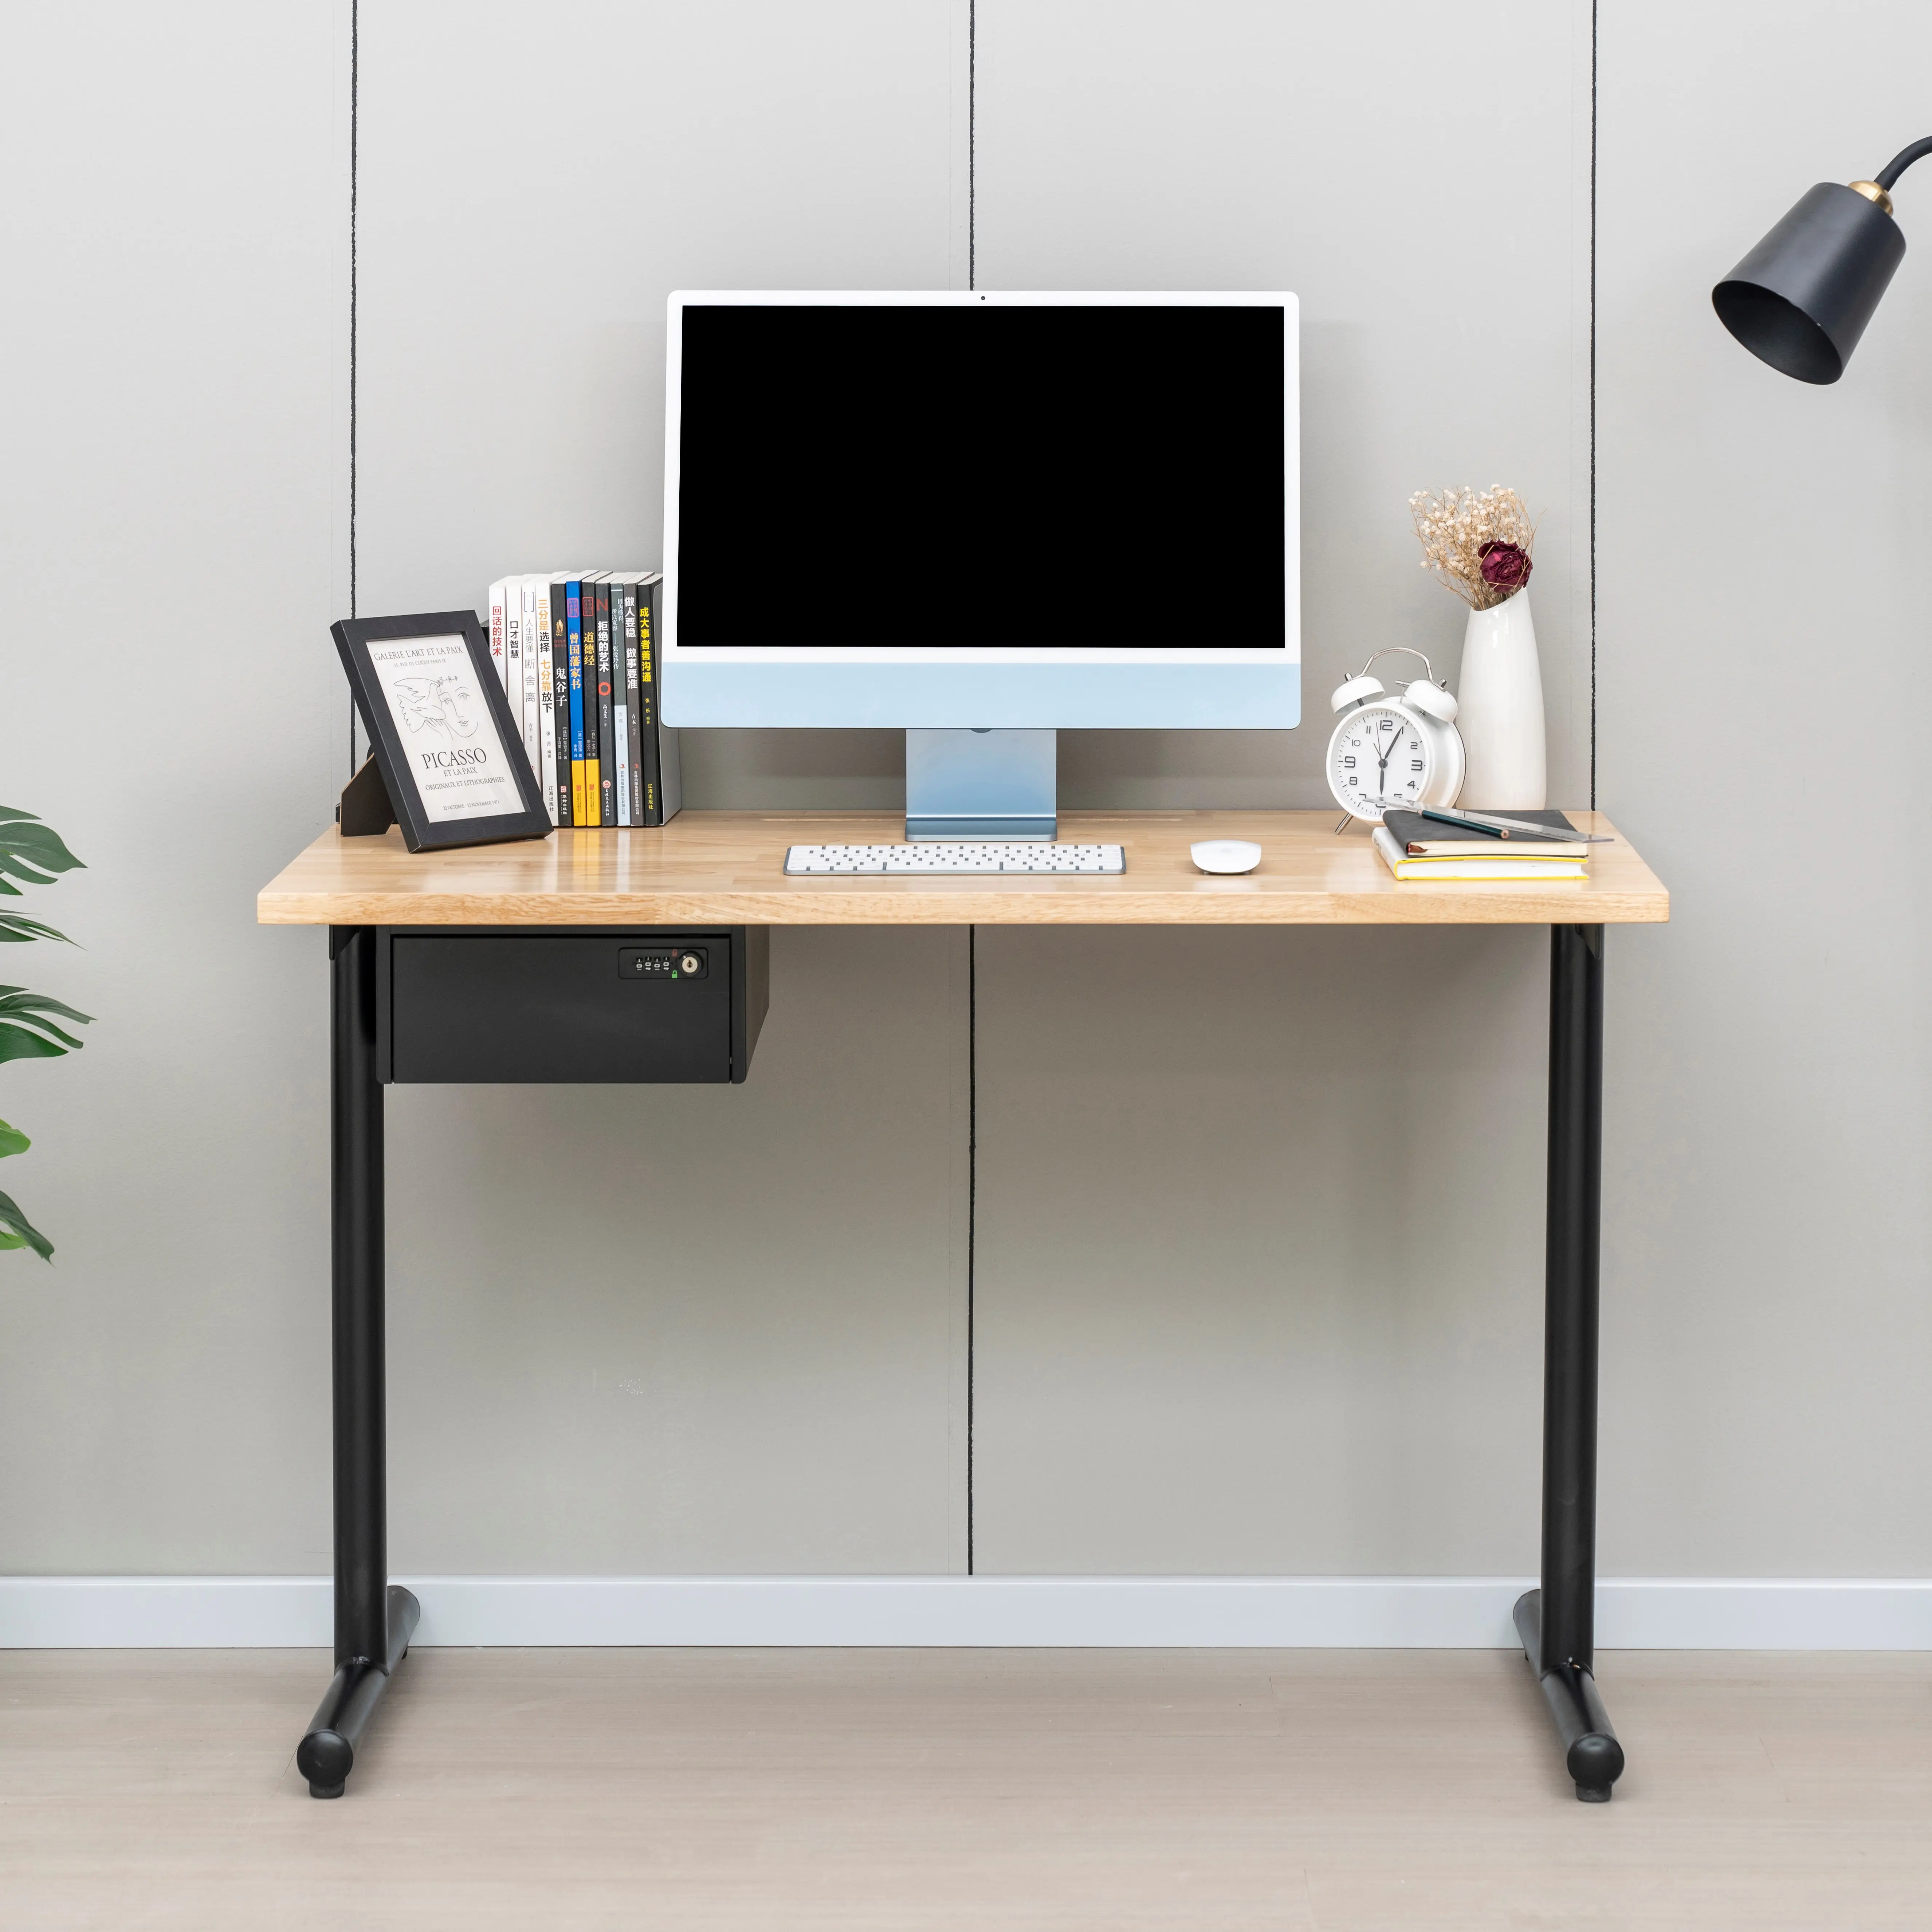 Table d'ordinateur images/conception de table de bureau/mobilier de bureau